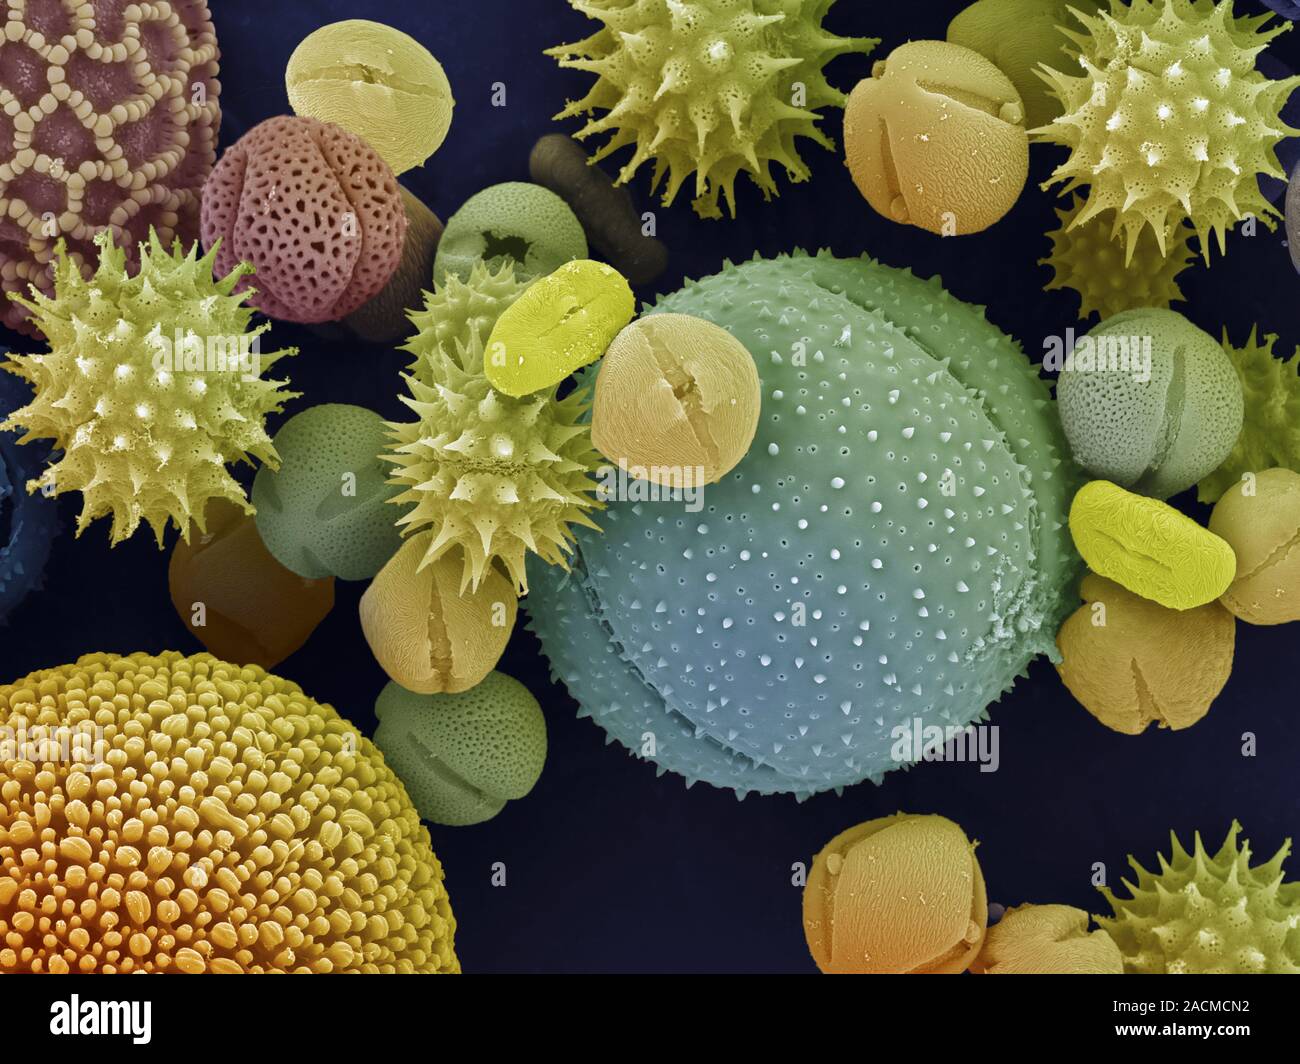 Пыльца и споры. Пыльцевые зерна под микроскопом. Пыльца цветковых растений под микроскопом. Пыльца покрытосеменных под микроскопом. Пыльца микроскопия палинология.